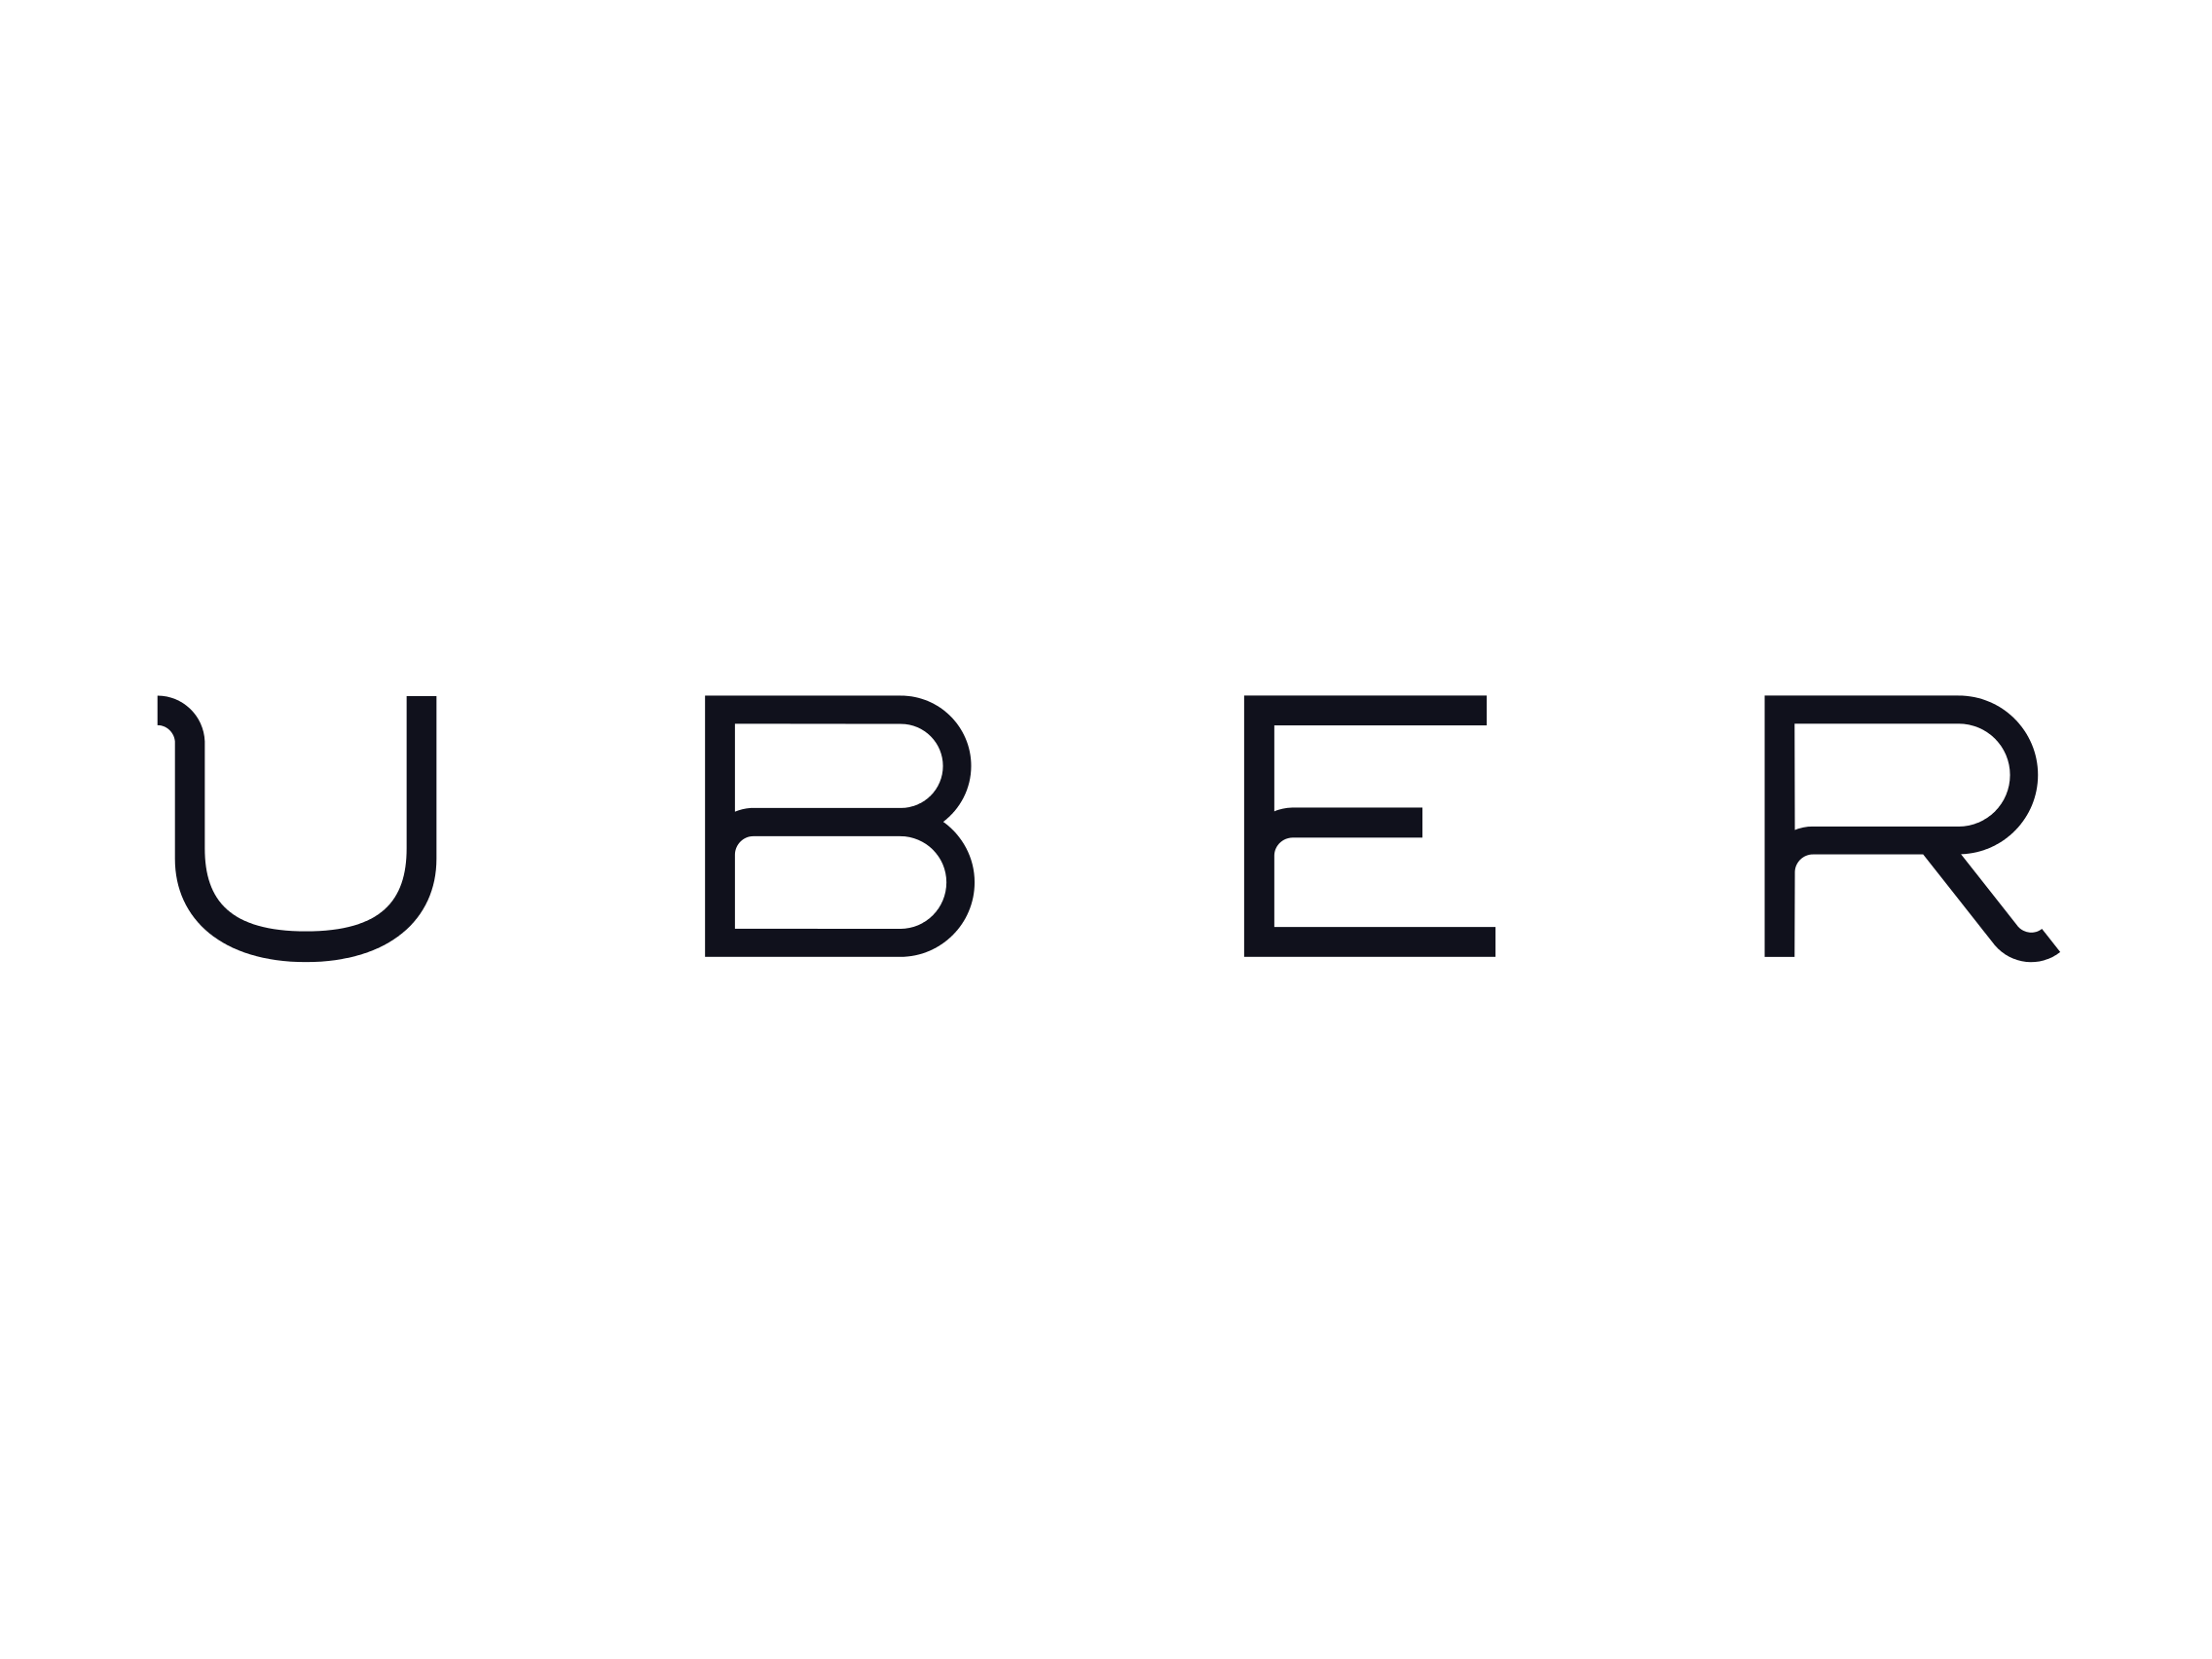 Uber-Logo